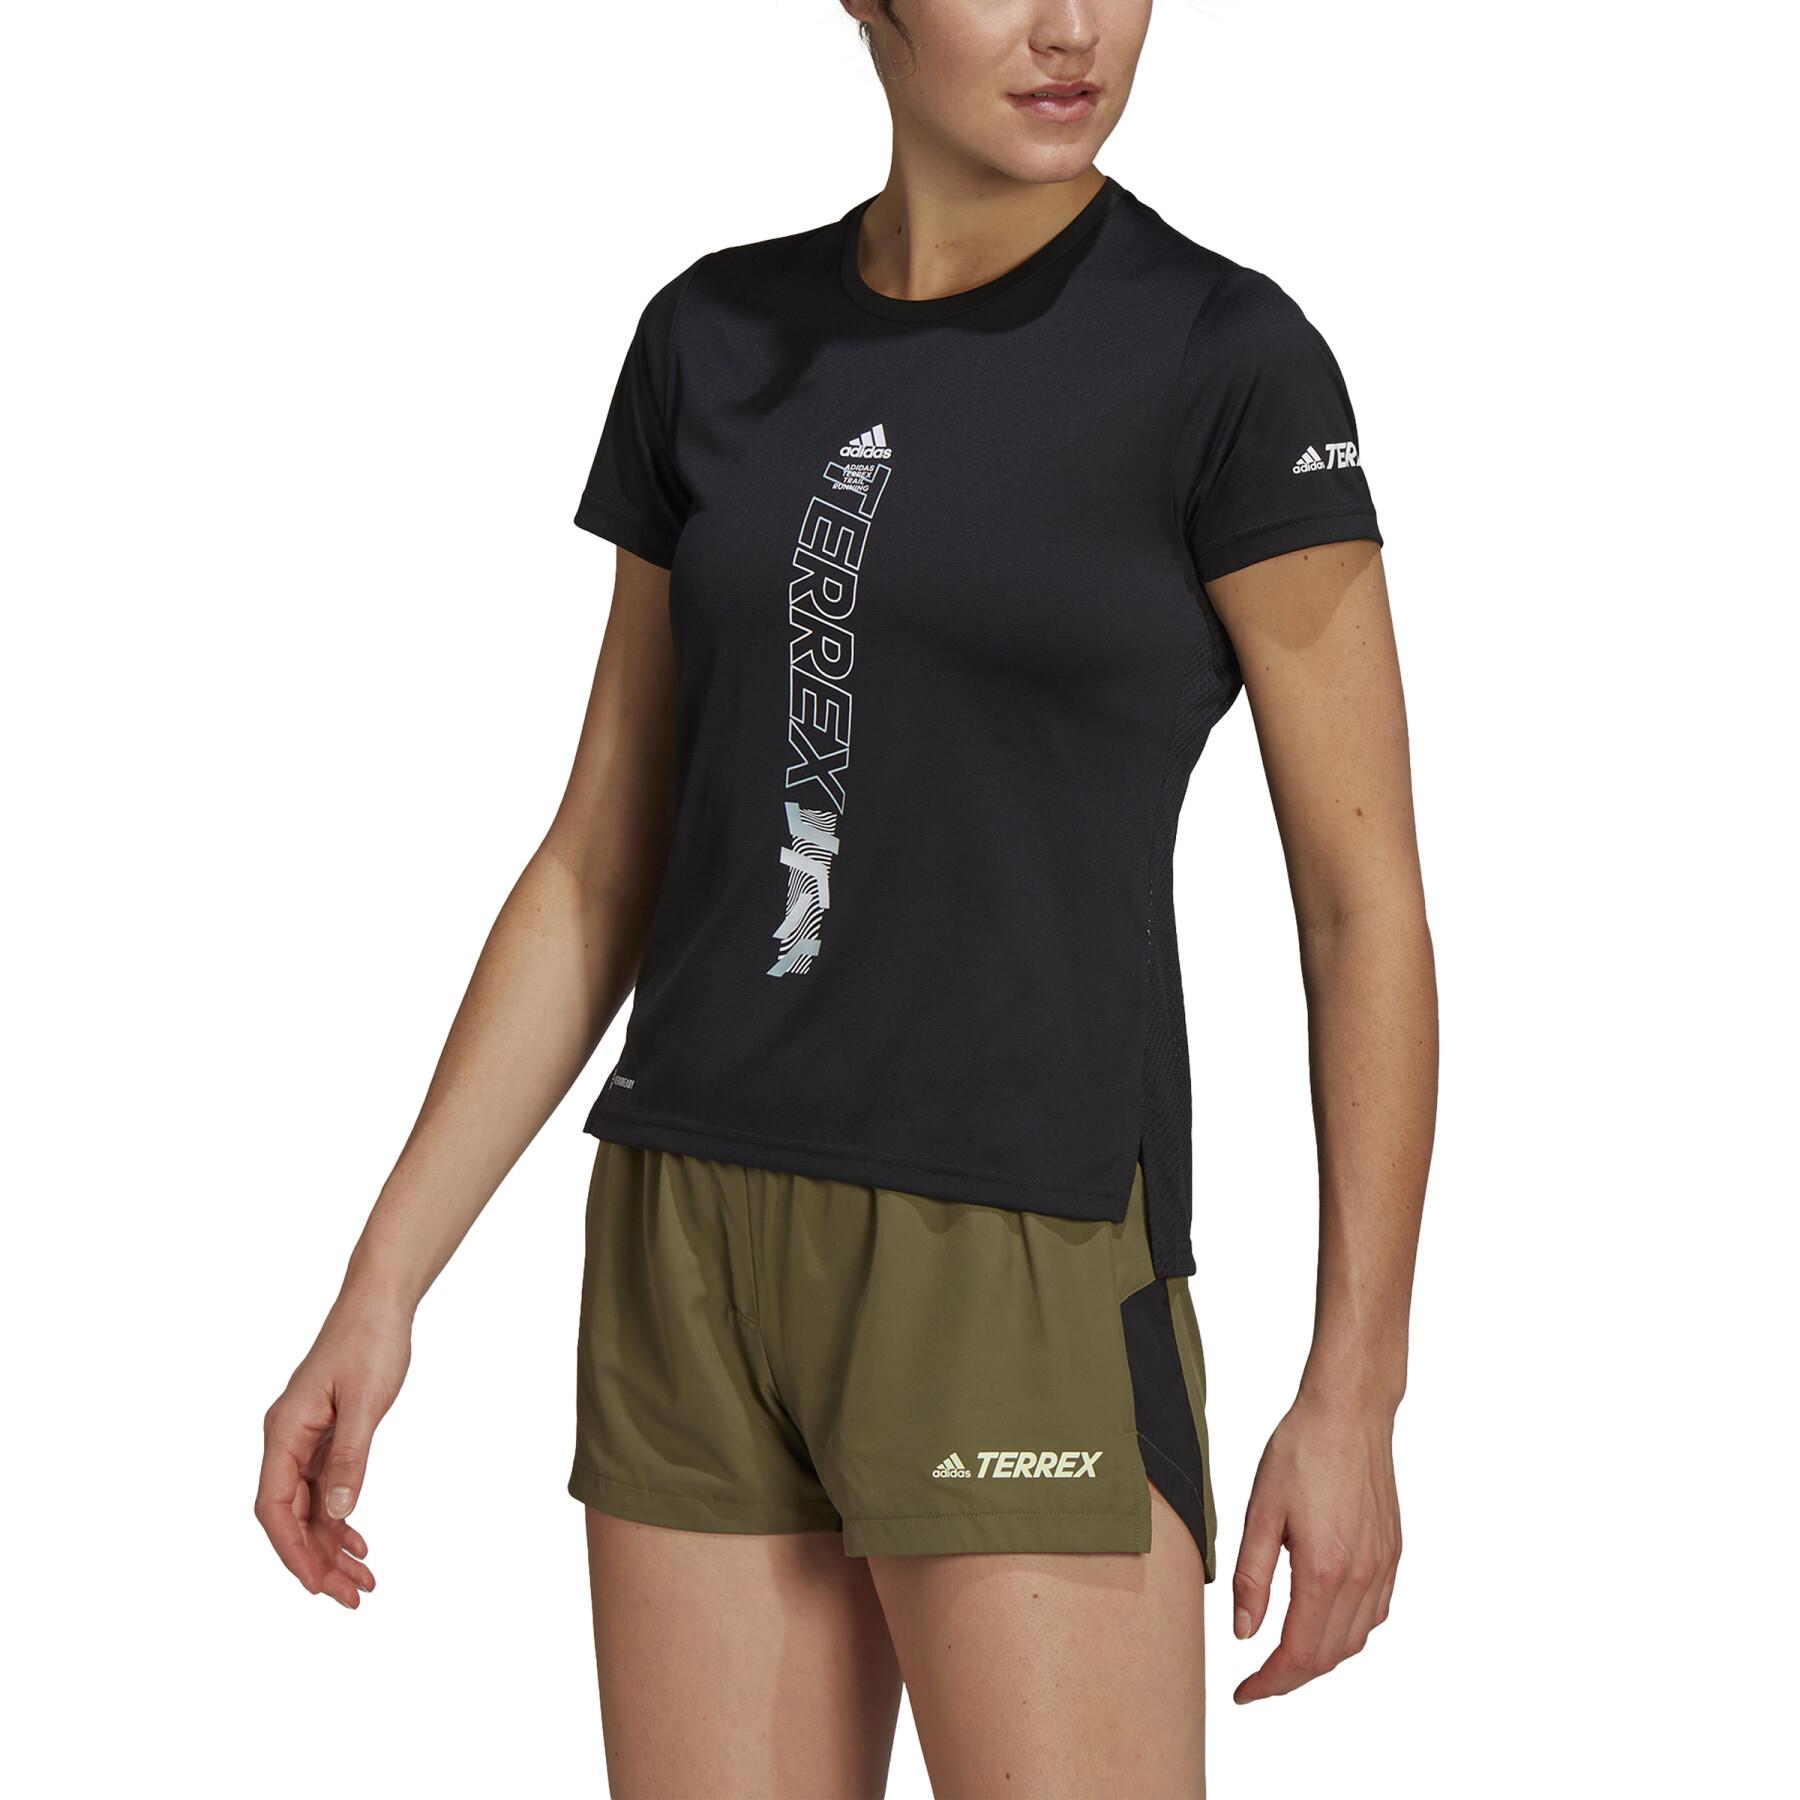 Women's T-shirt adidas Terrex